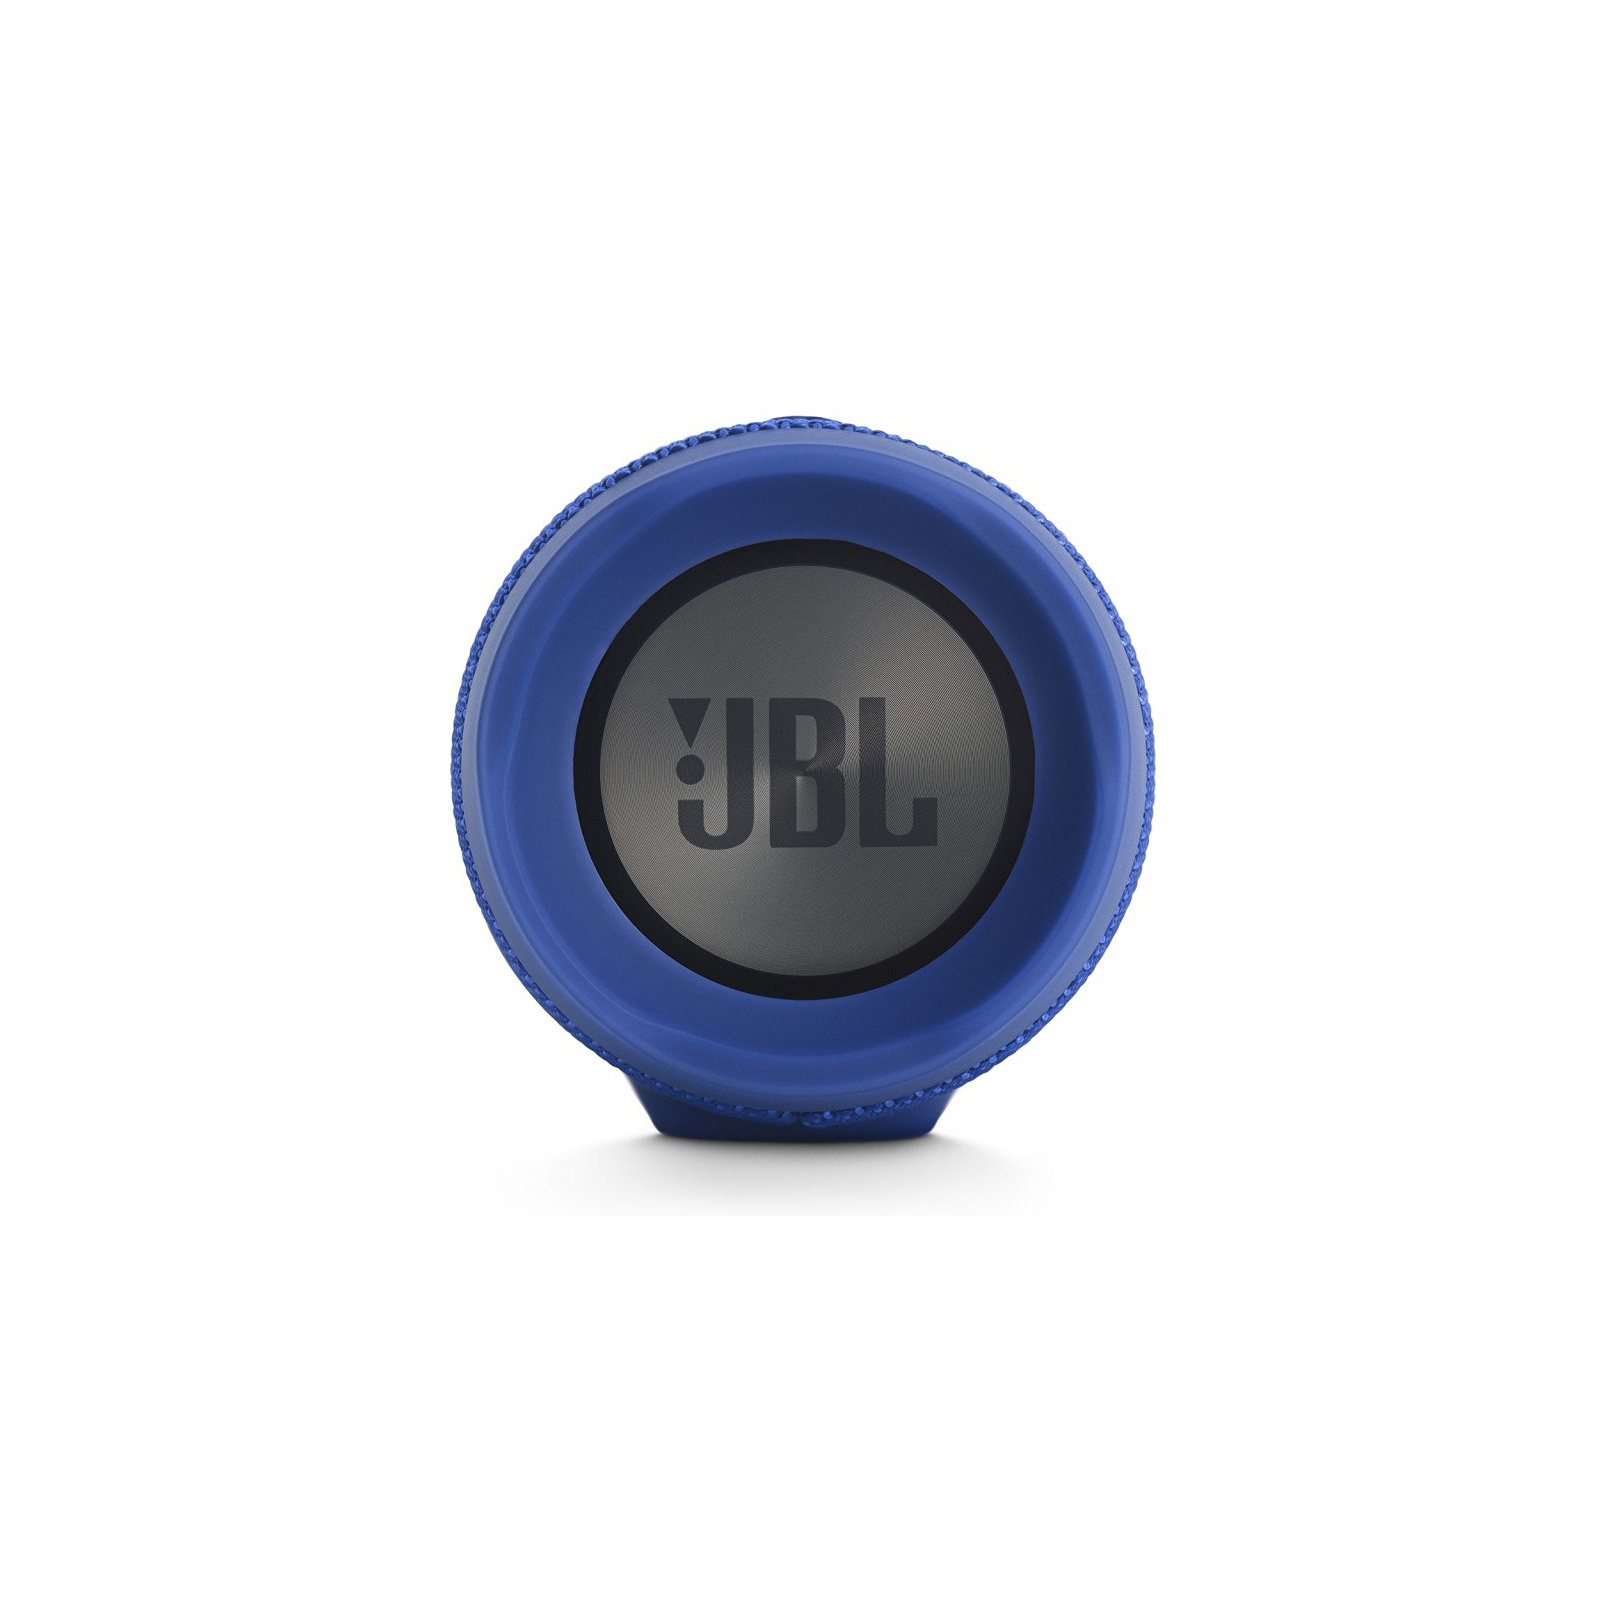 Акустическая система JBL Charge 3 Blue (JBLCHARGE3BLUEEU) изображение 6